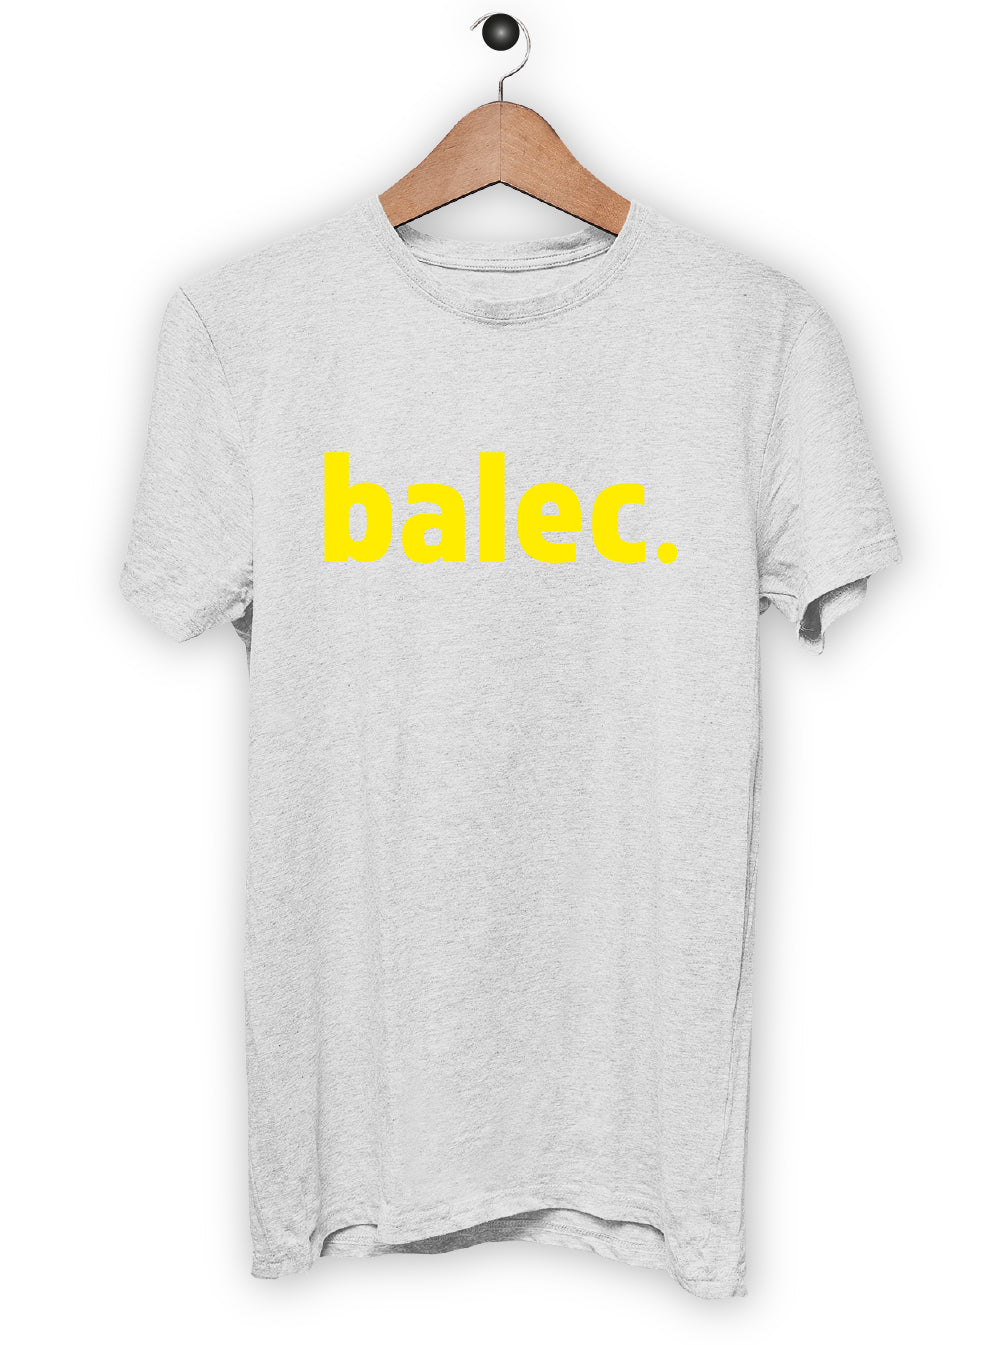 T-Shirt "BALEC"